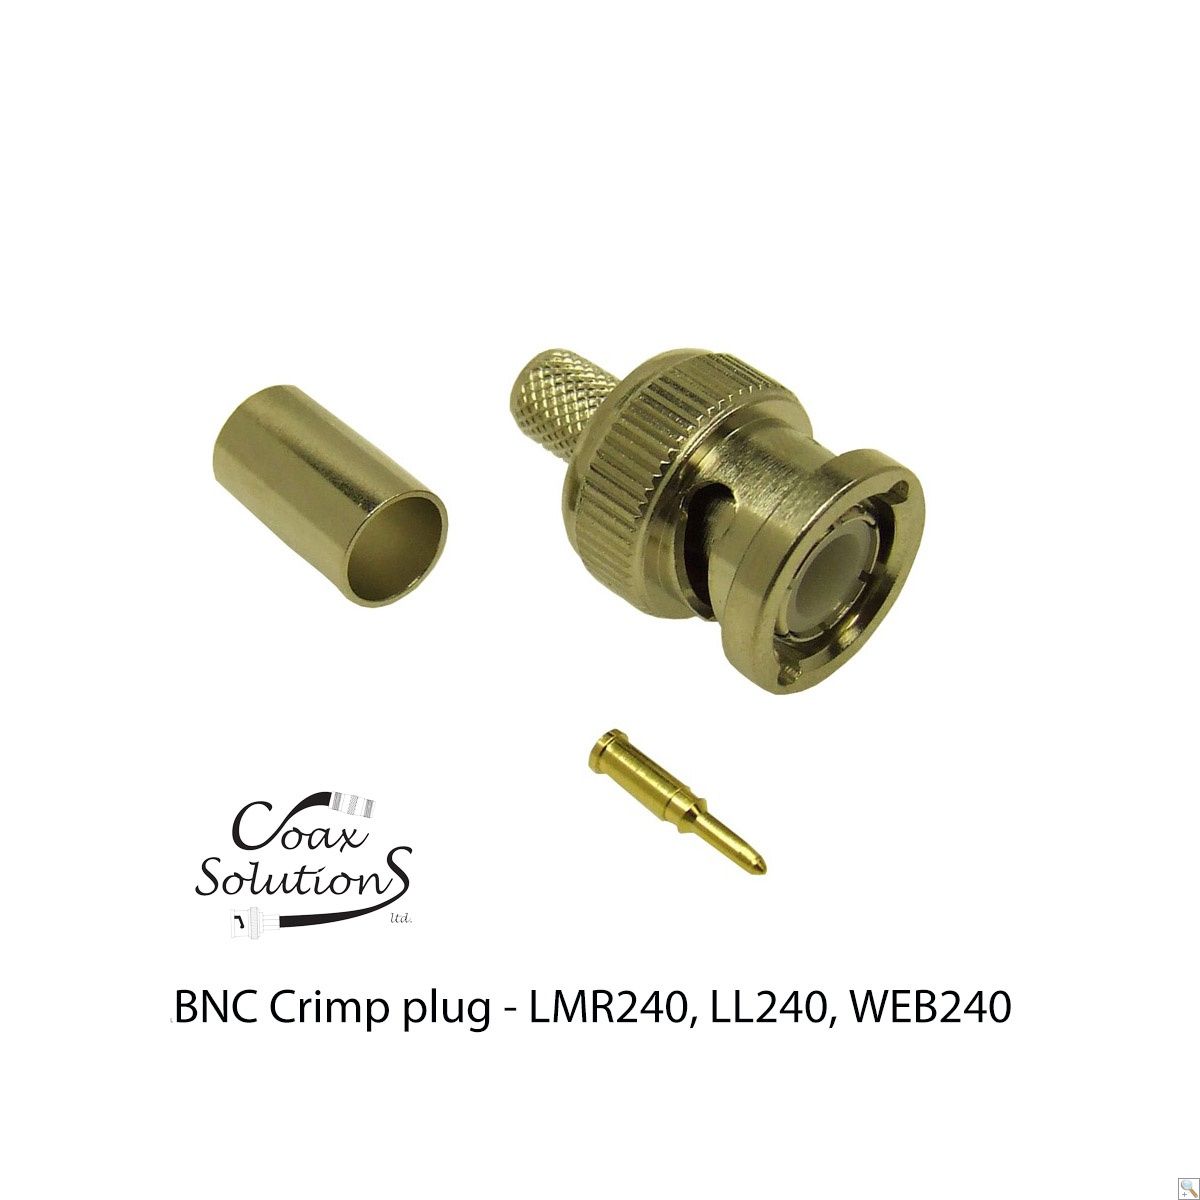 BNC Crimp plug LMR240